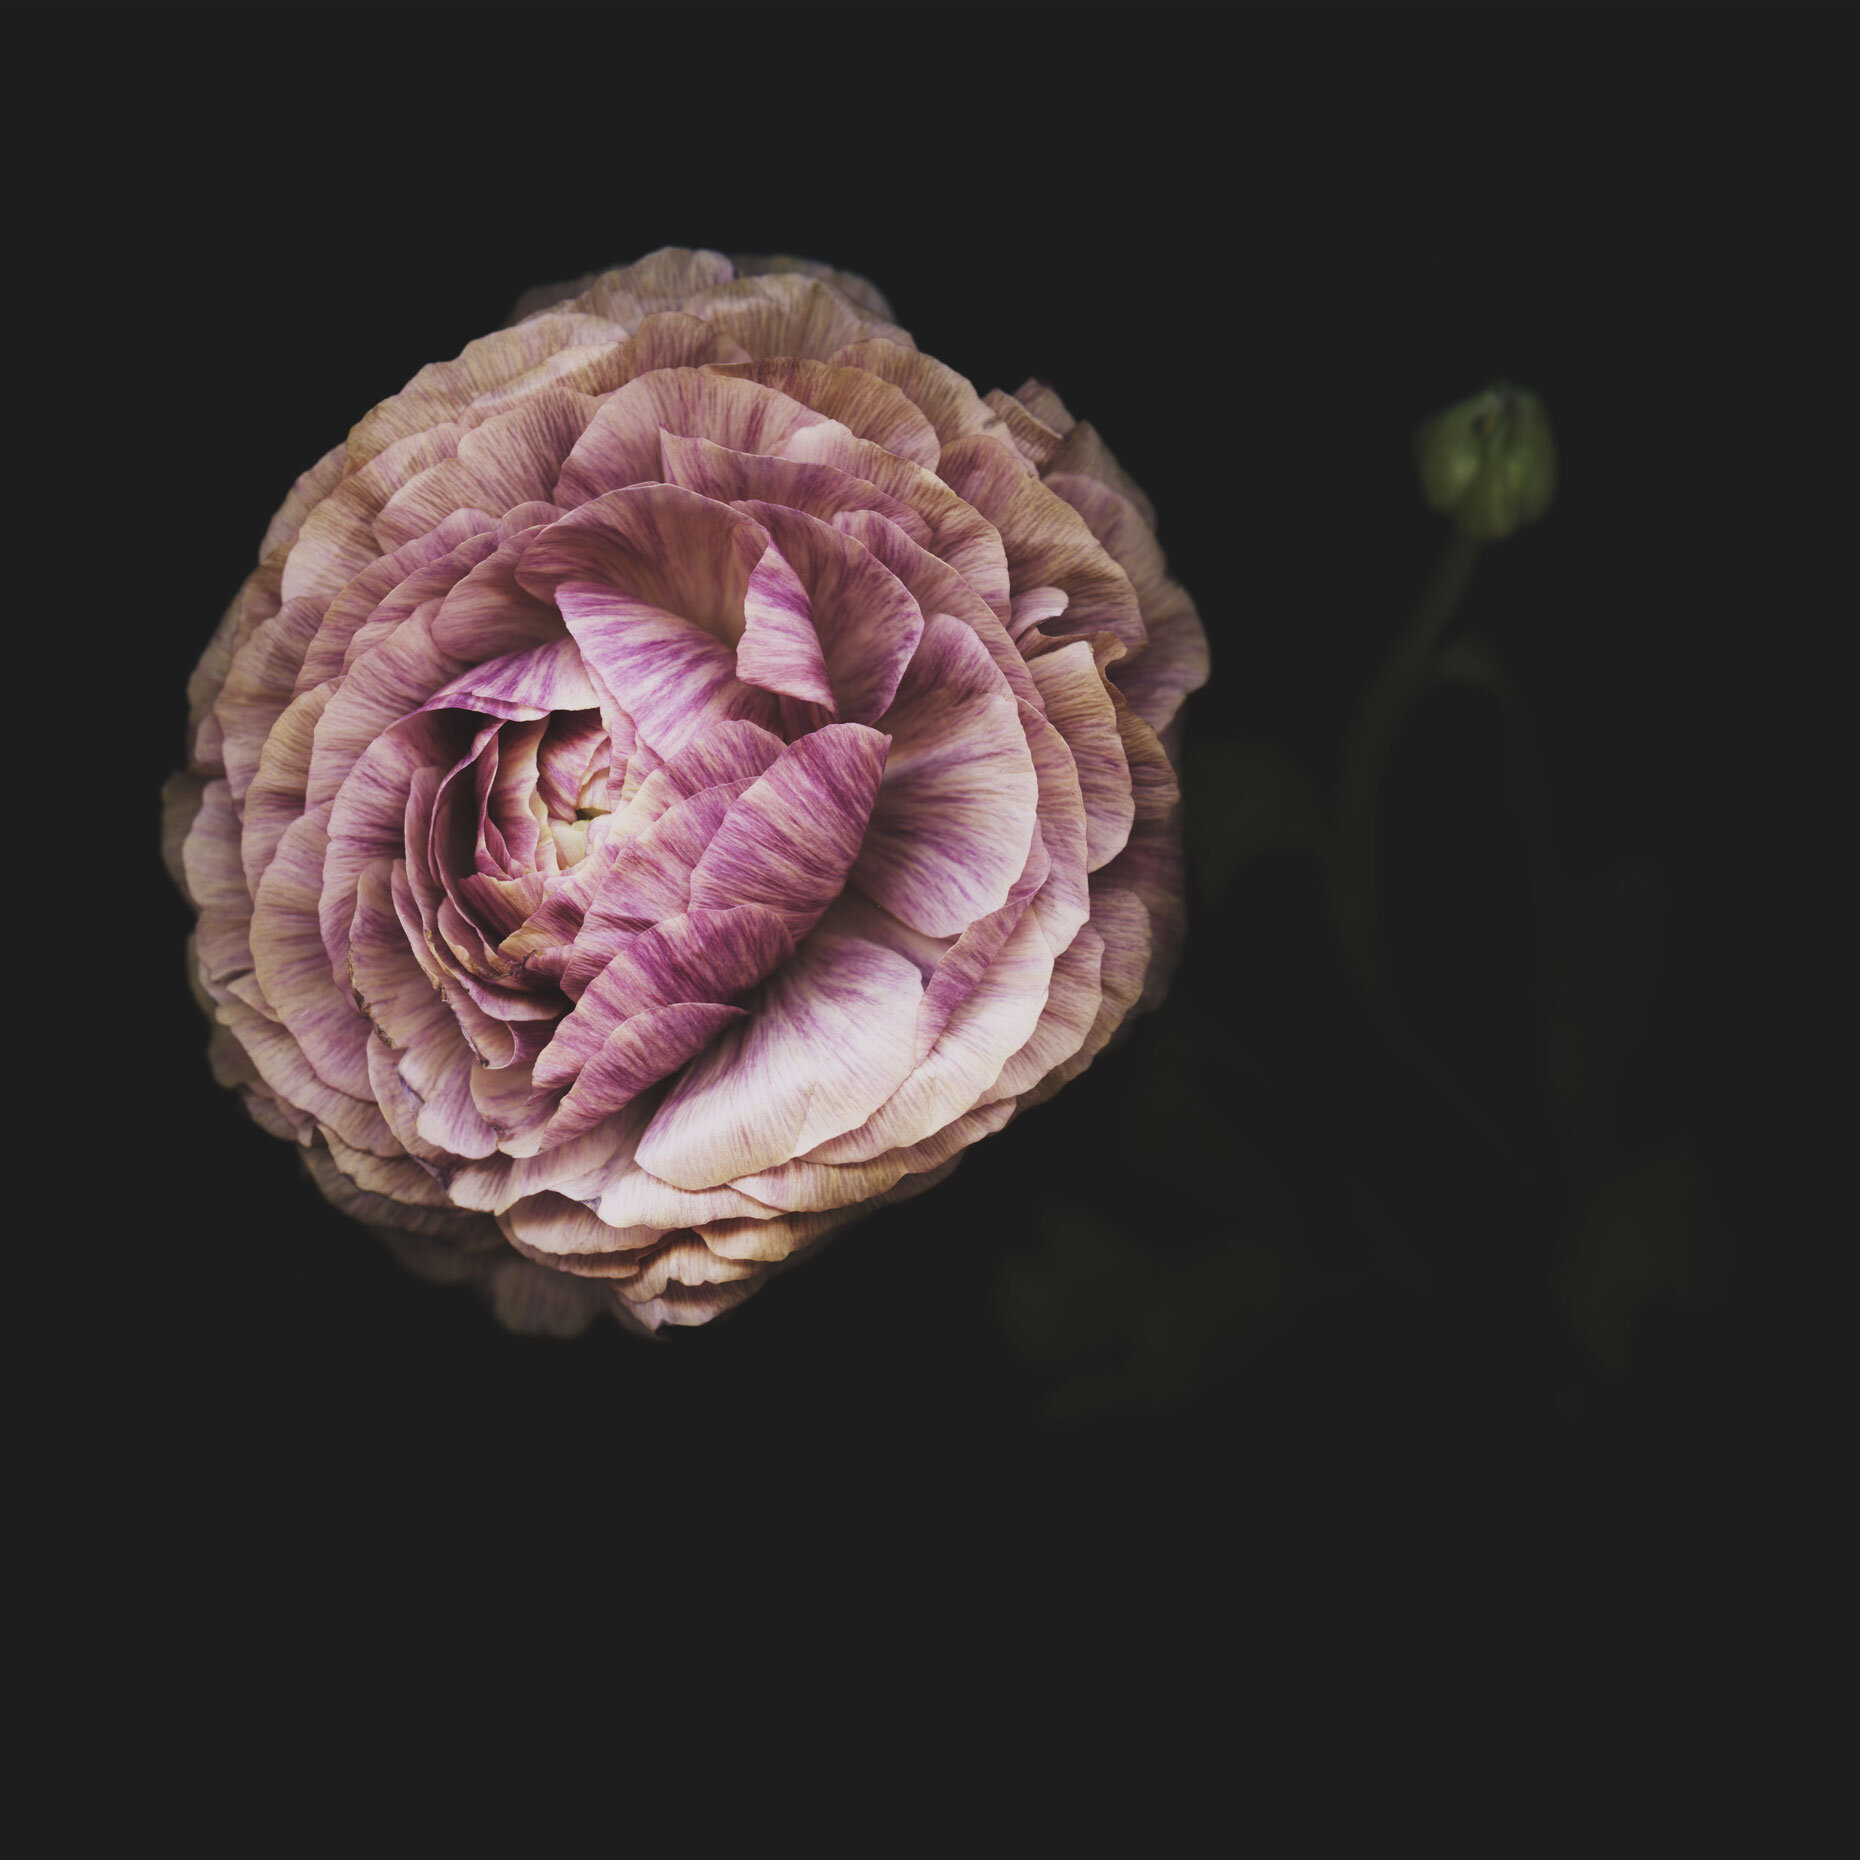 Derek Israelsen Flower 015.jpg